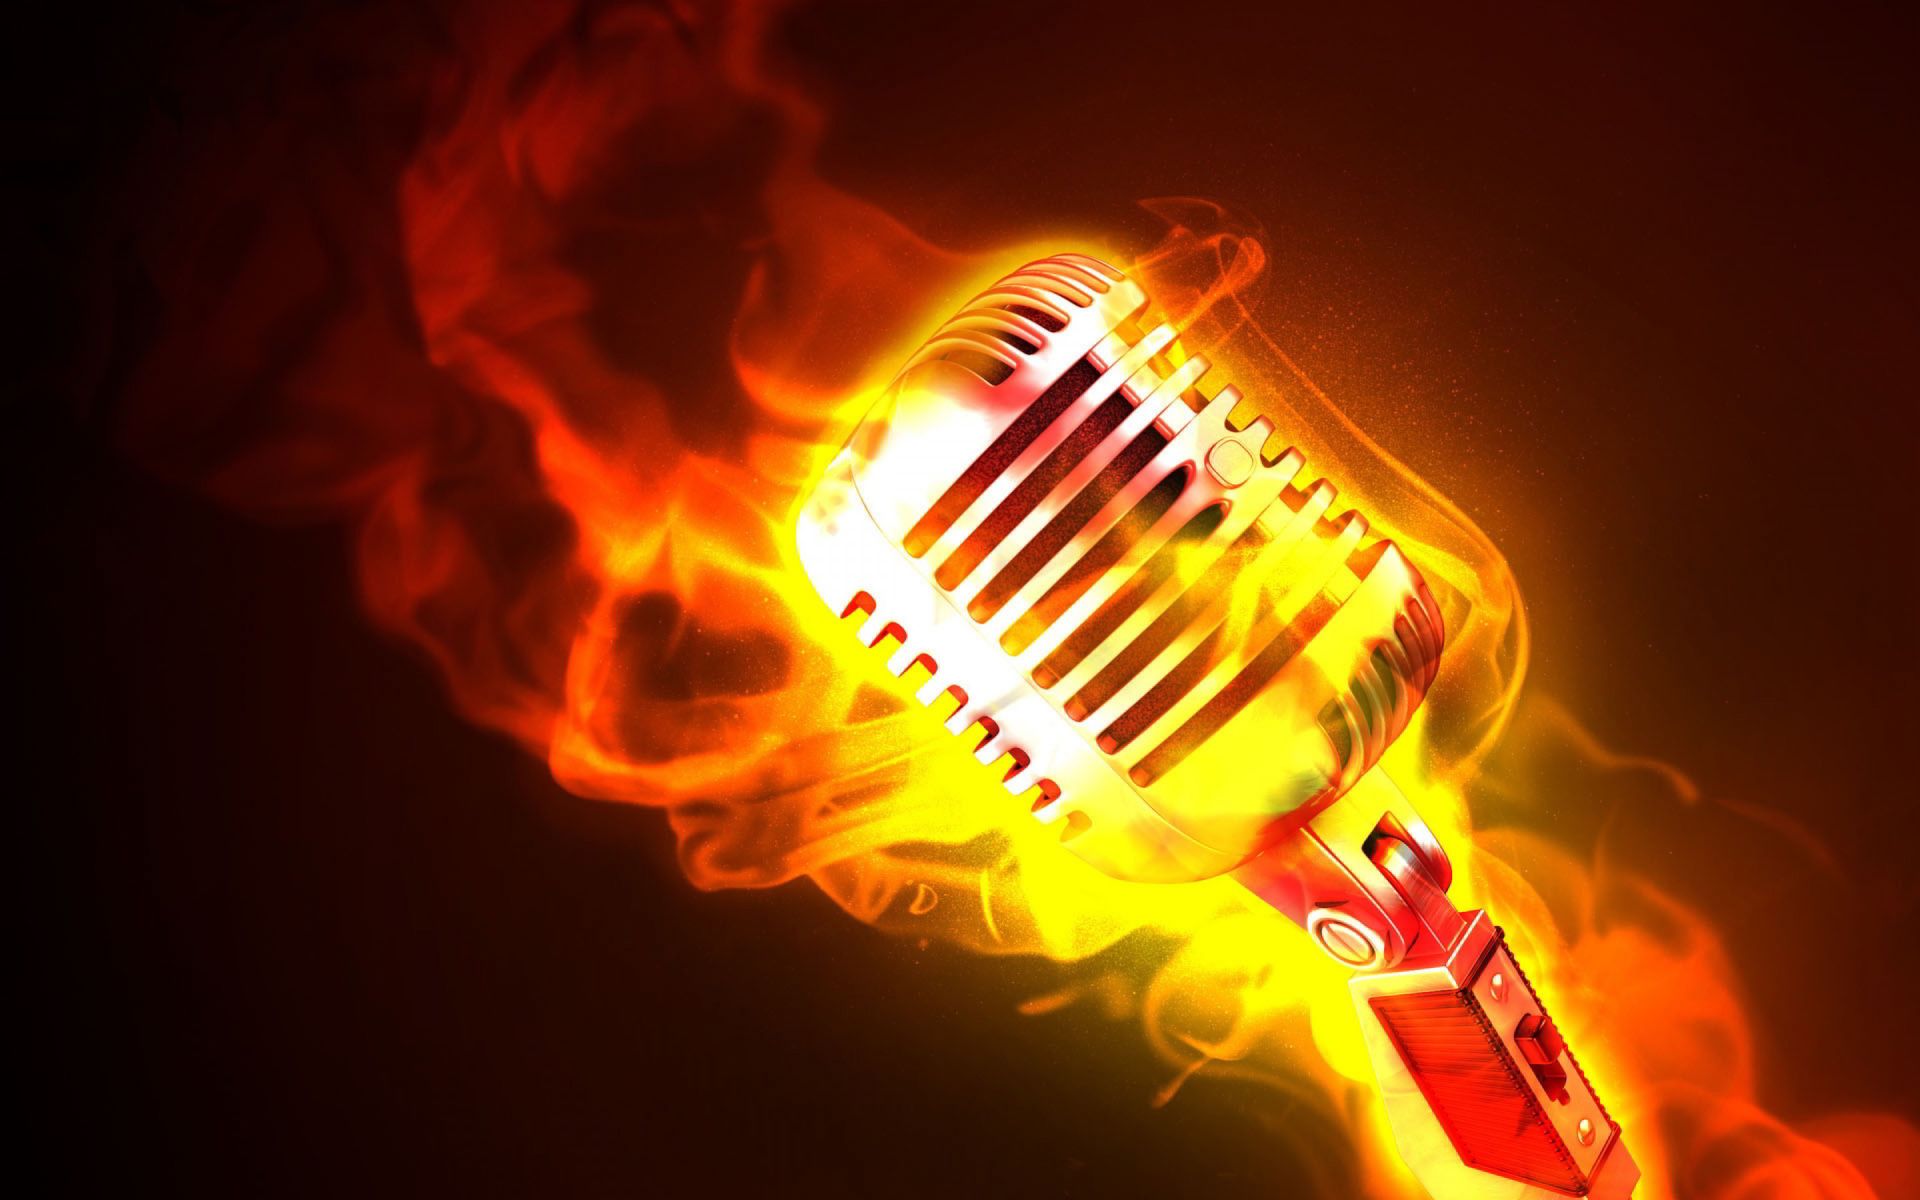 music artist wallpaper,flame,light,heat,orange,fire